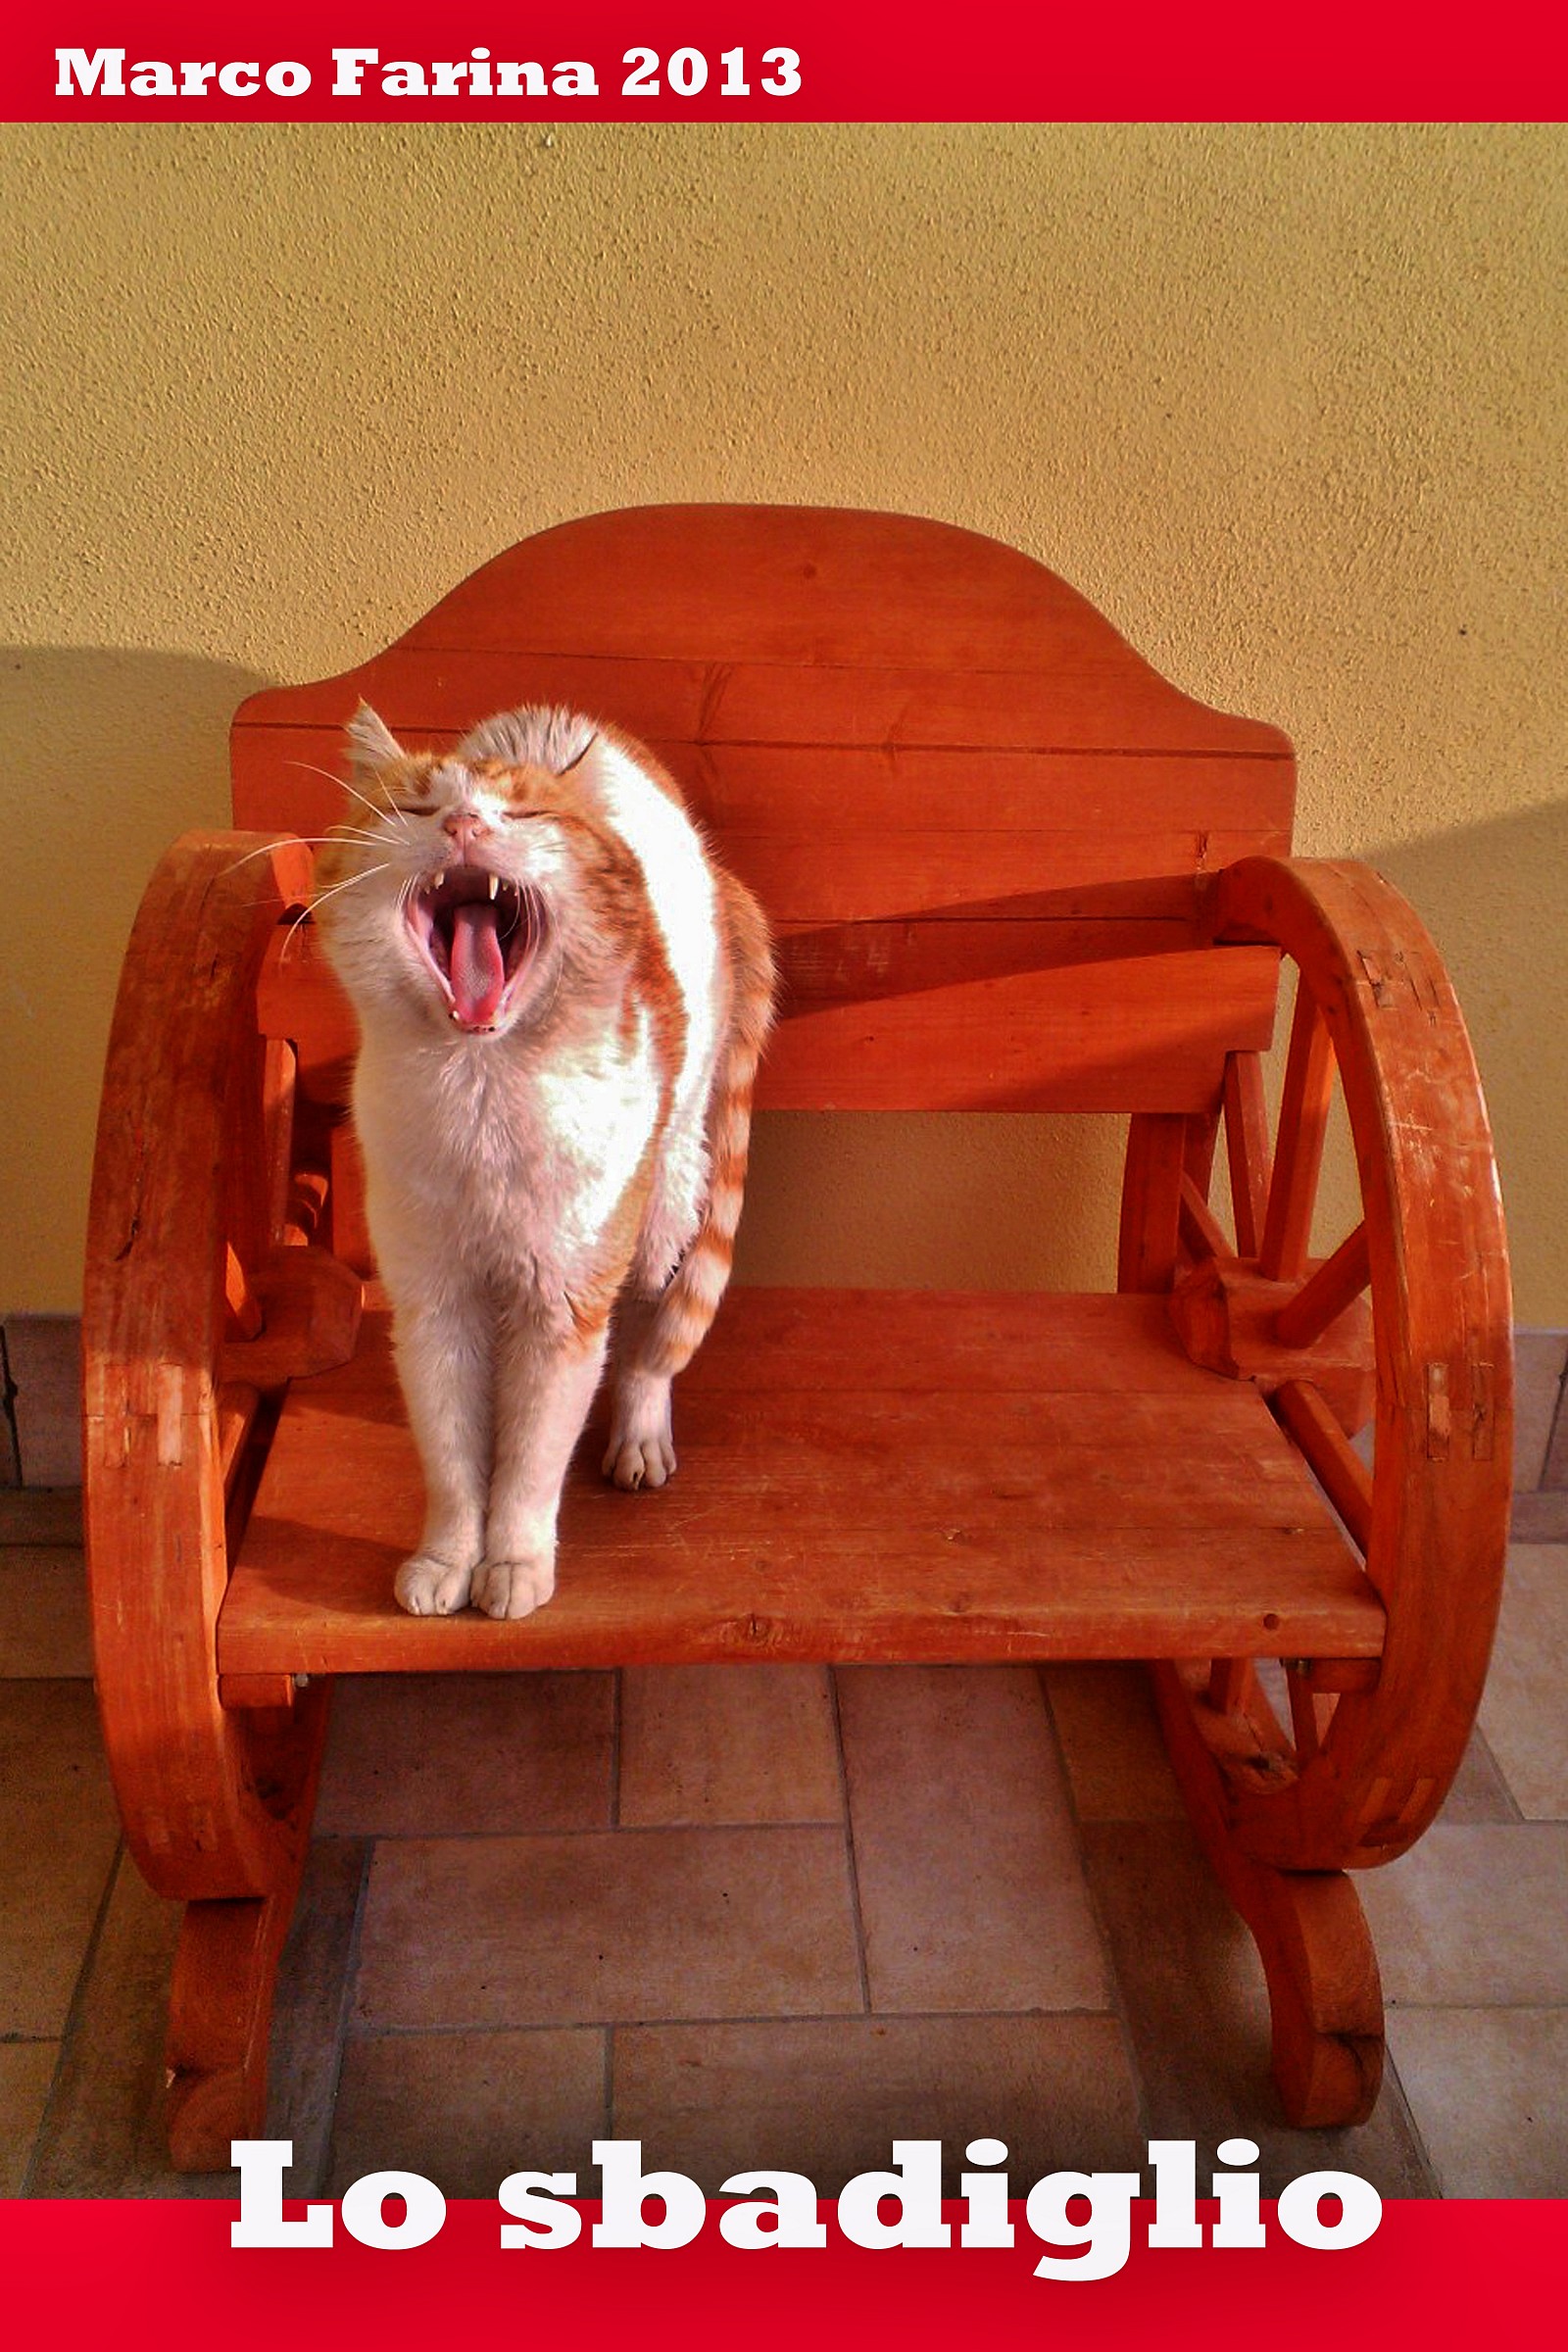 The yawn...